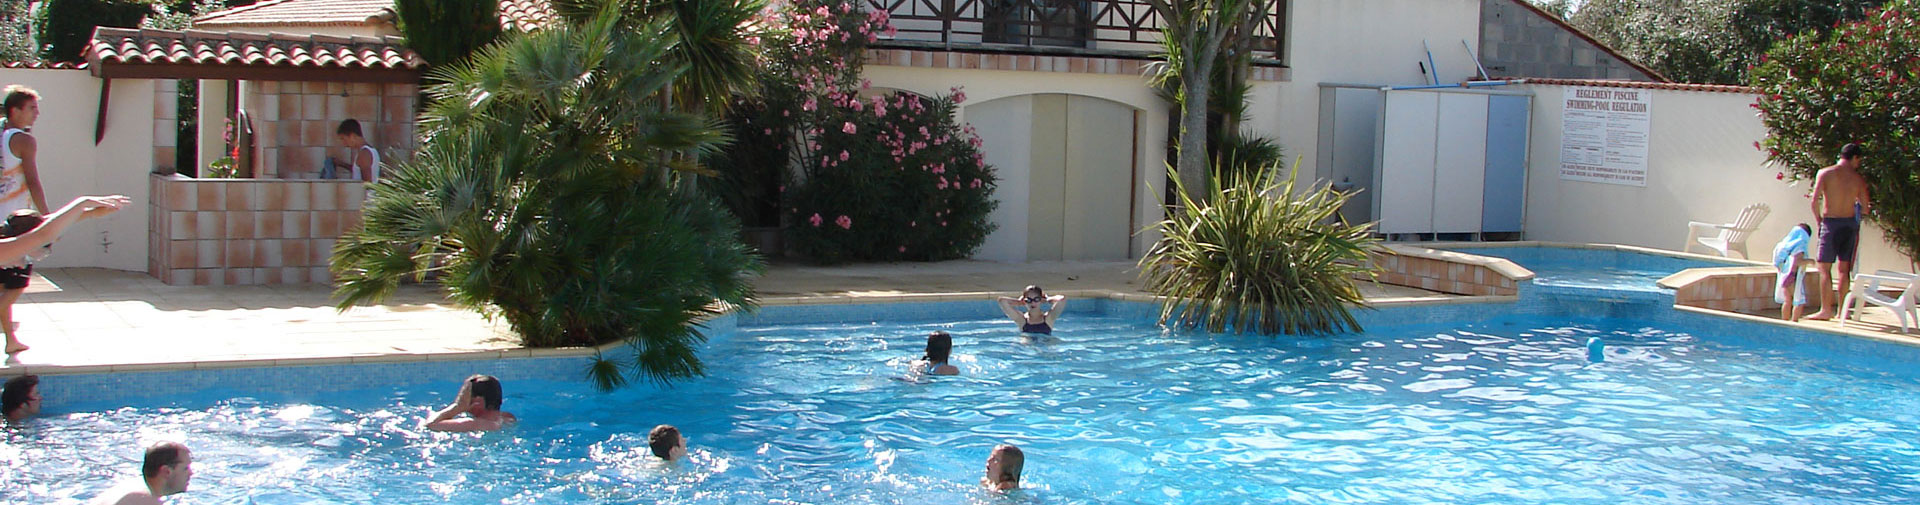 Ferienmiete von Zimmern auf der Insel Oléron für 3 Personen im Juli und August